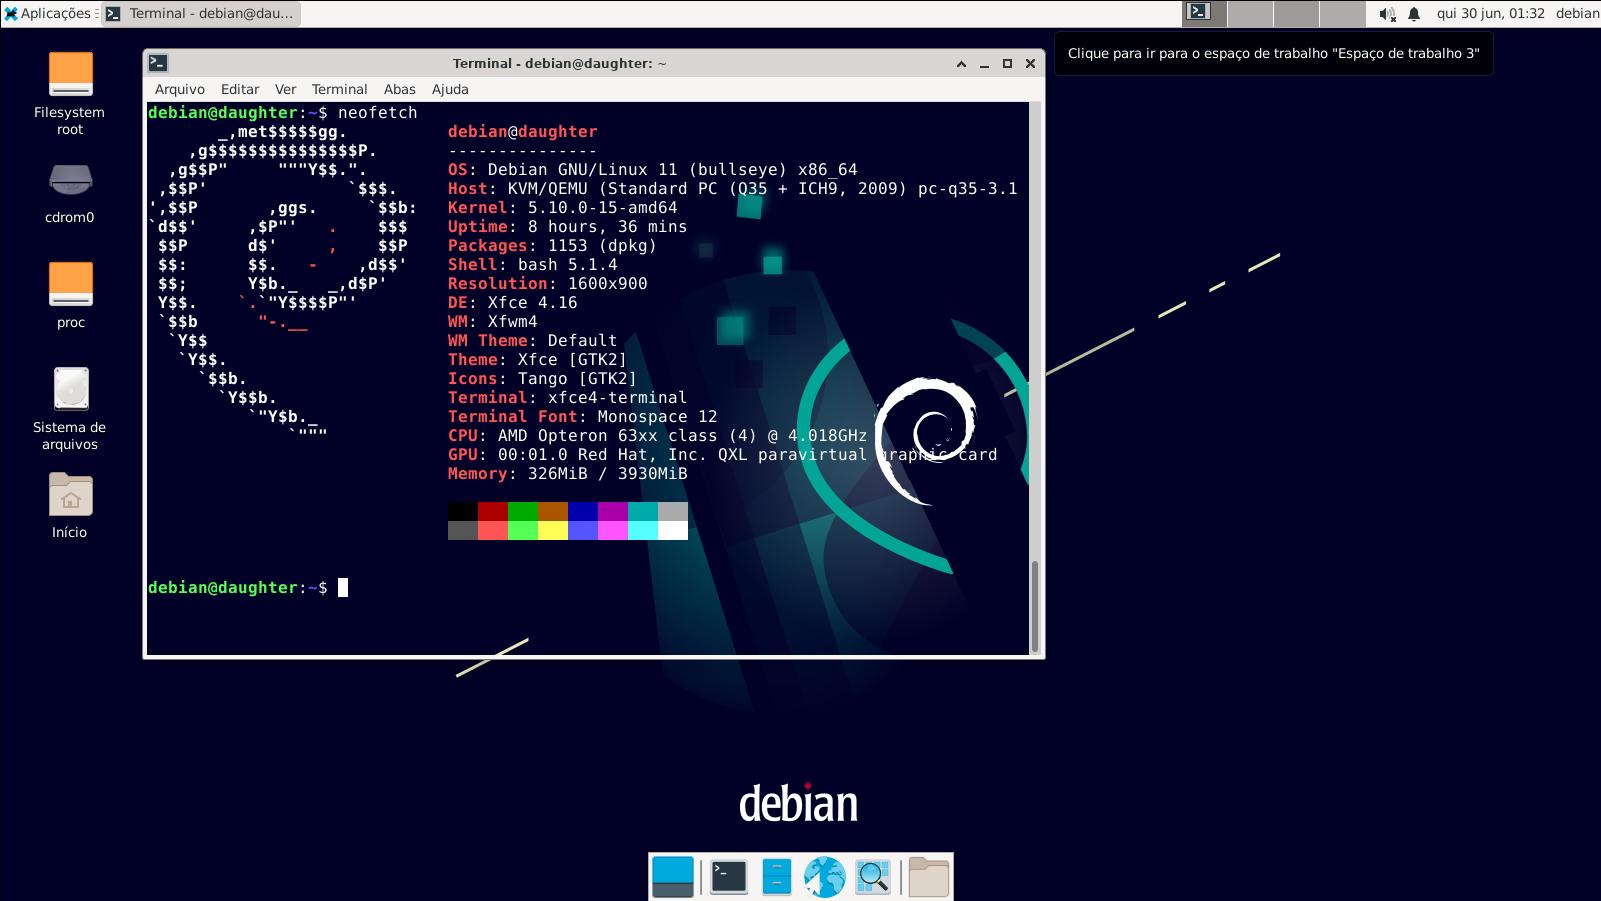 Teclado virtual de piano VMPK no Linux - veja como instalar